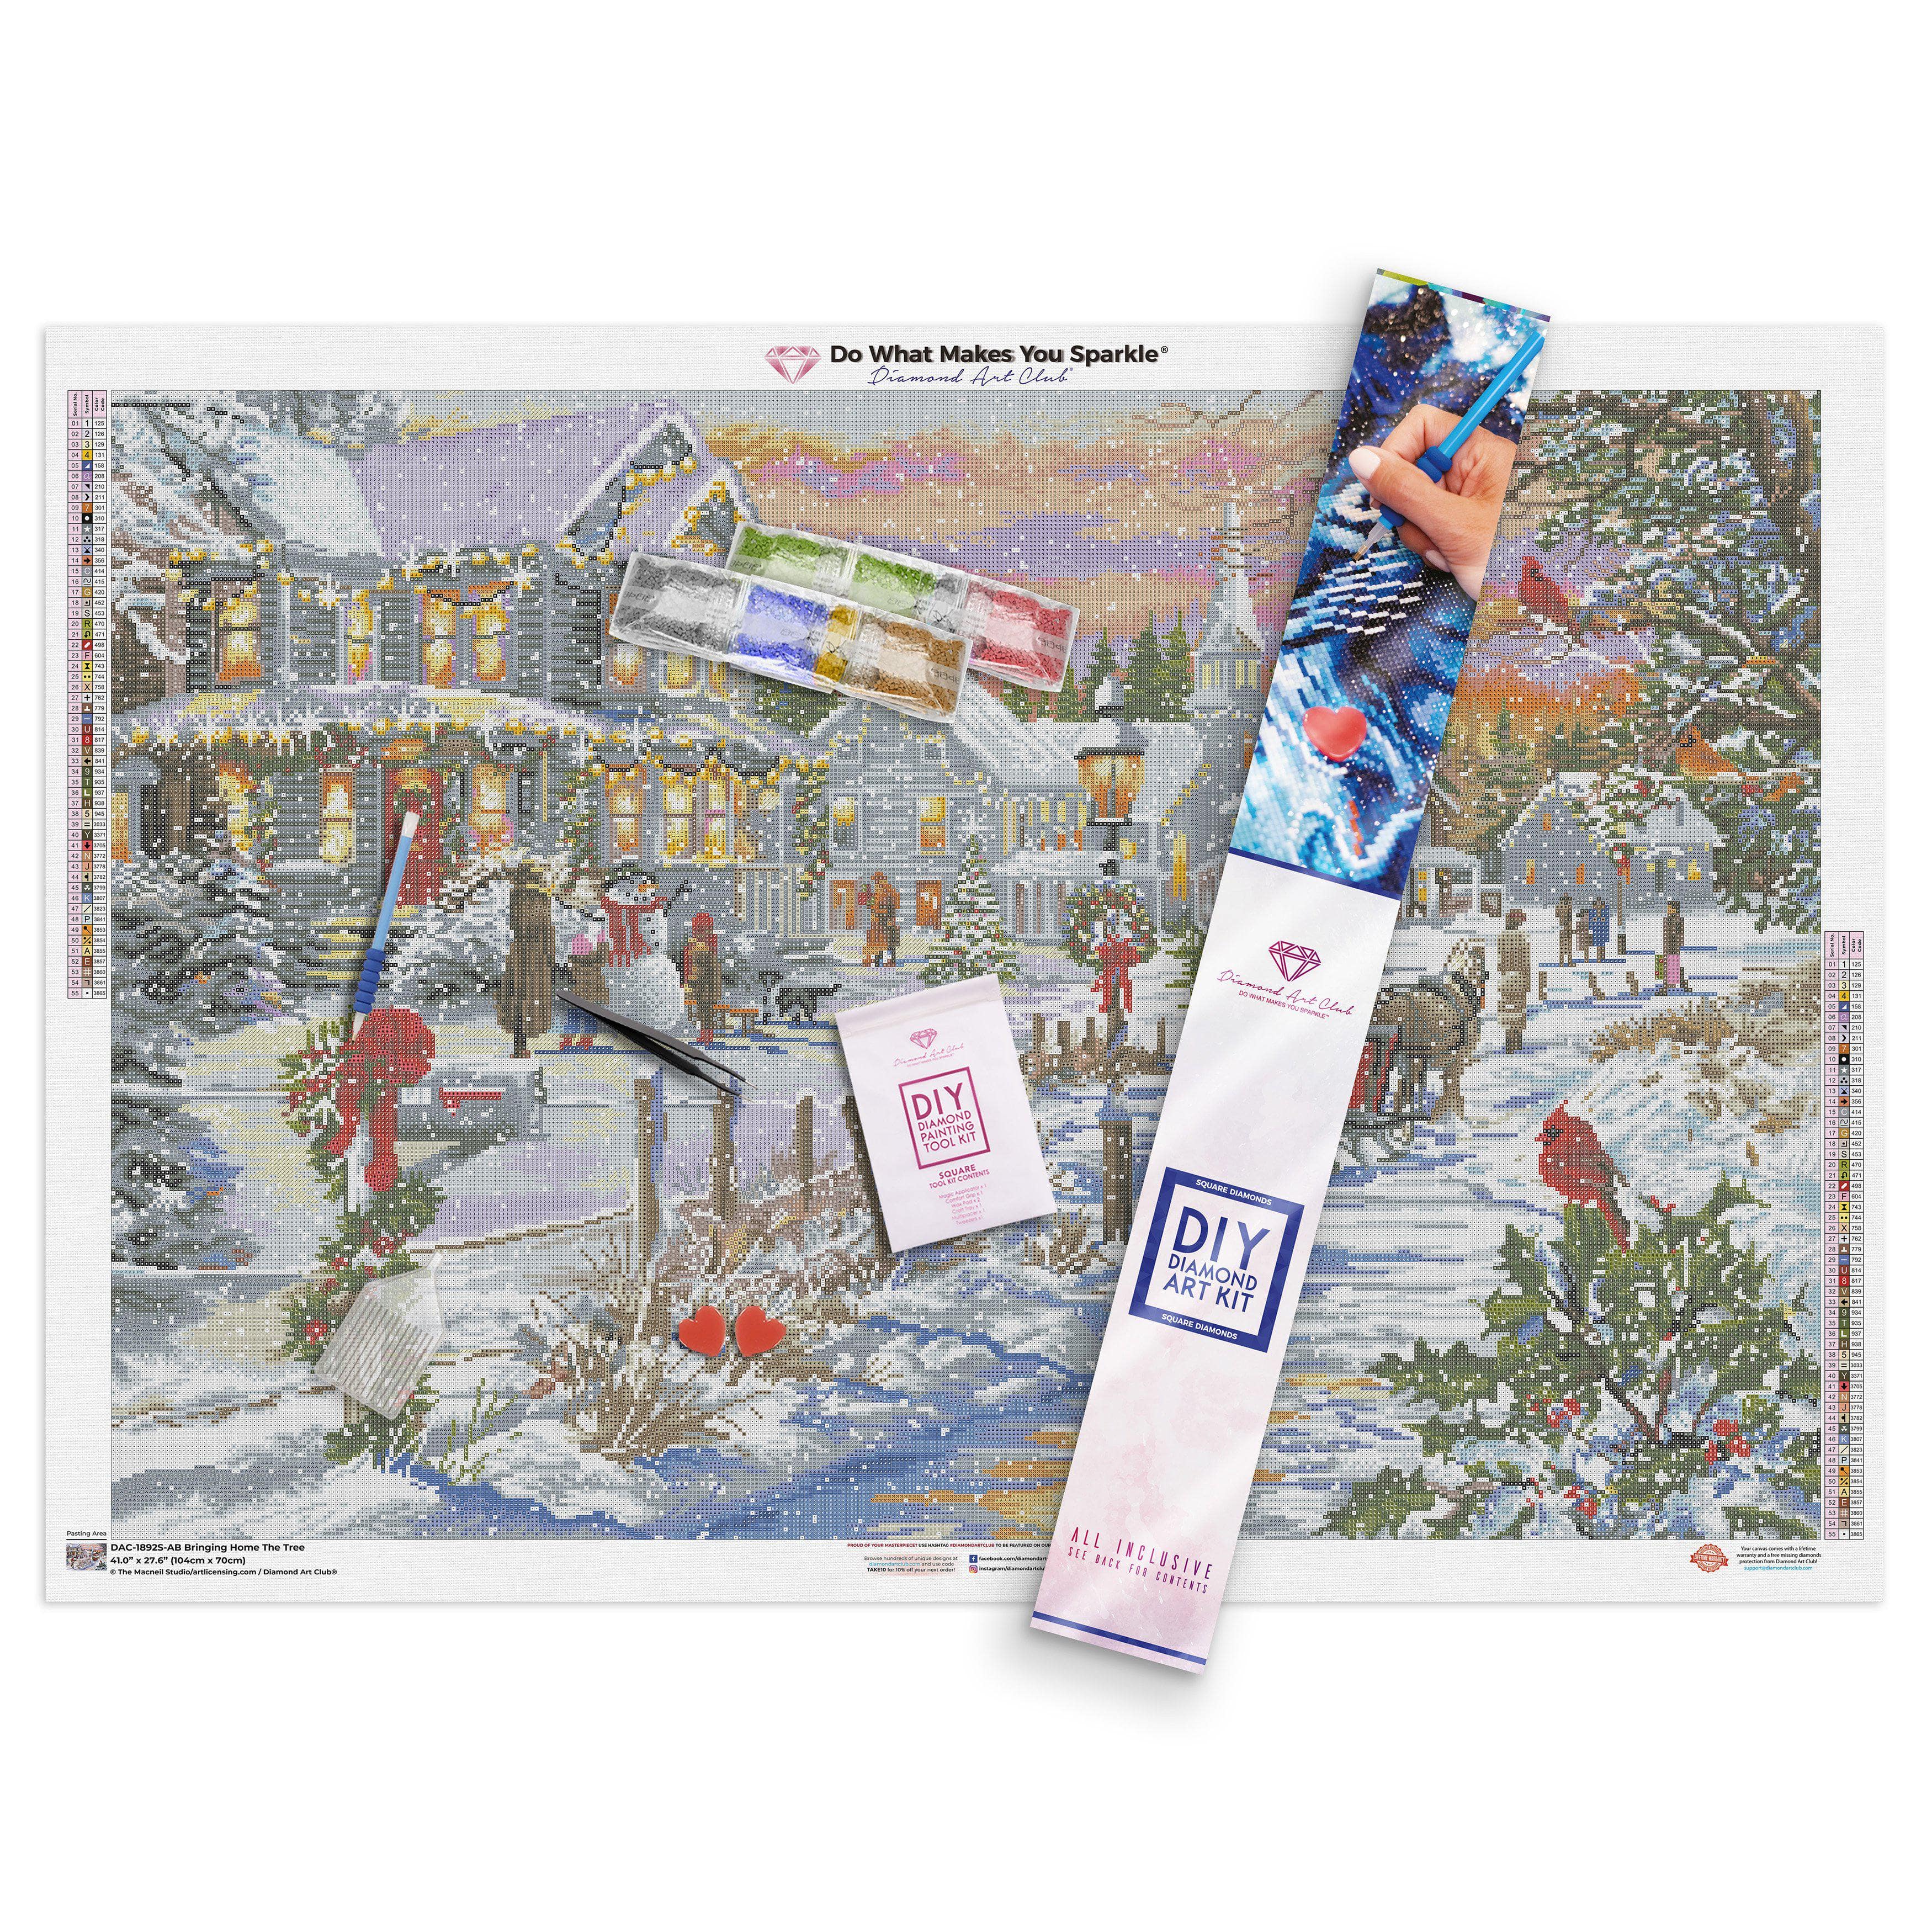 New York City's Grand Christmas Tree Diamond Painting Kit